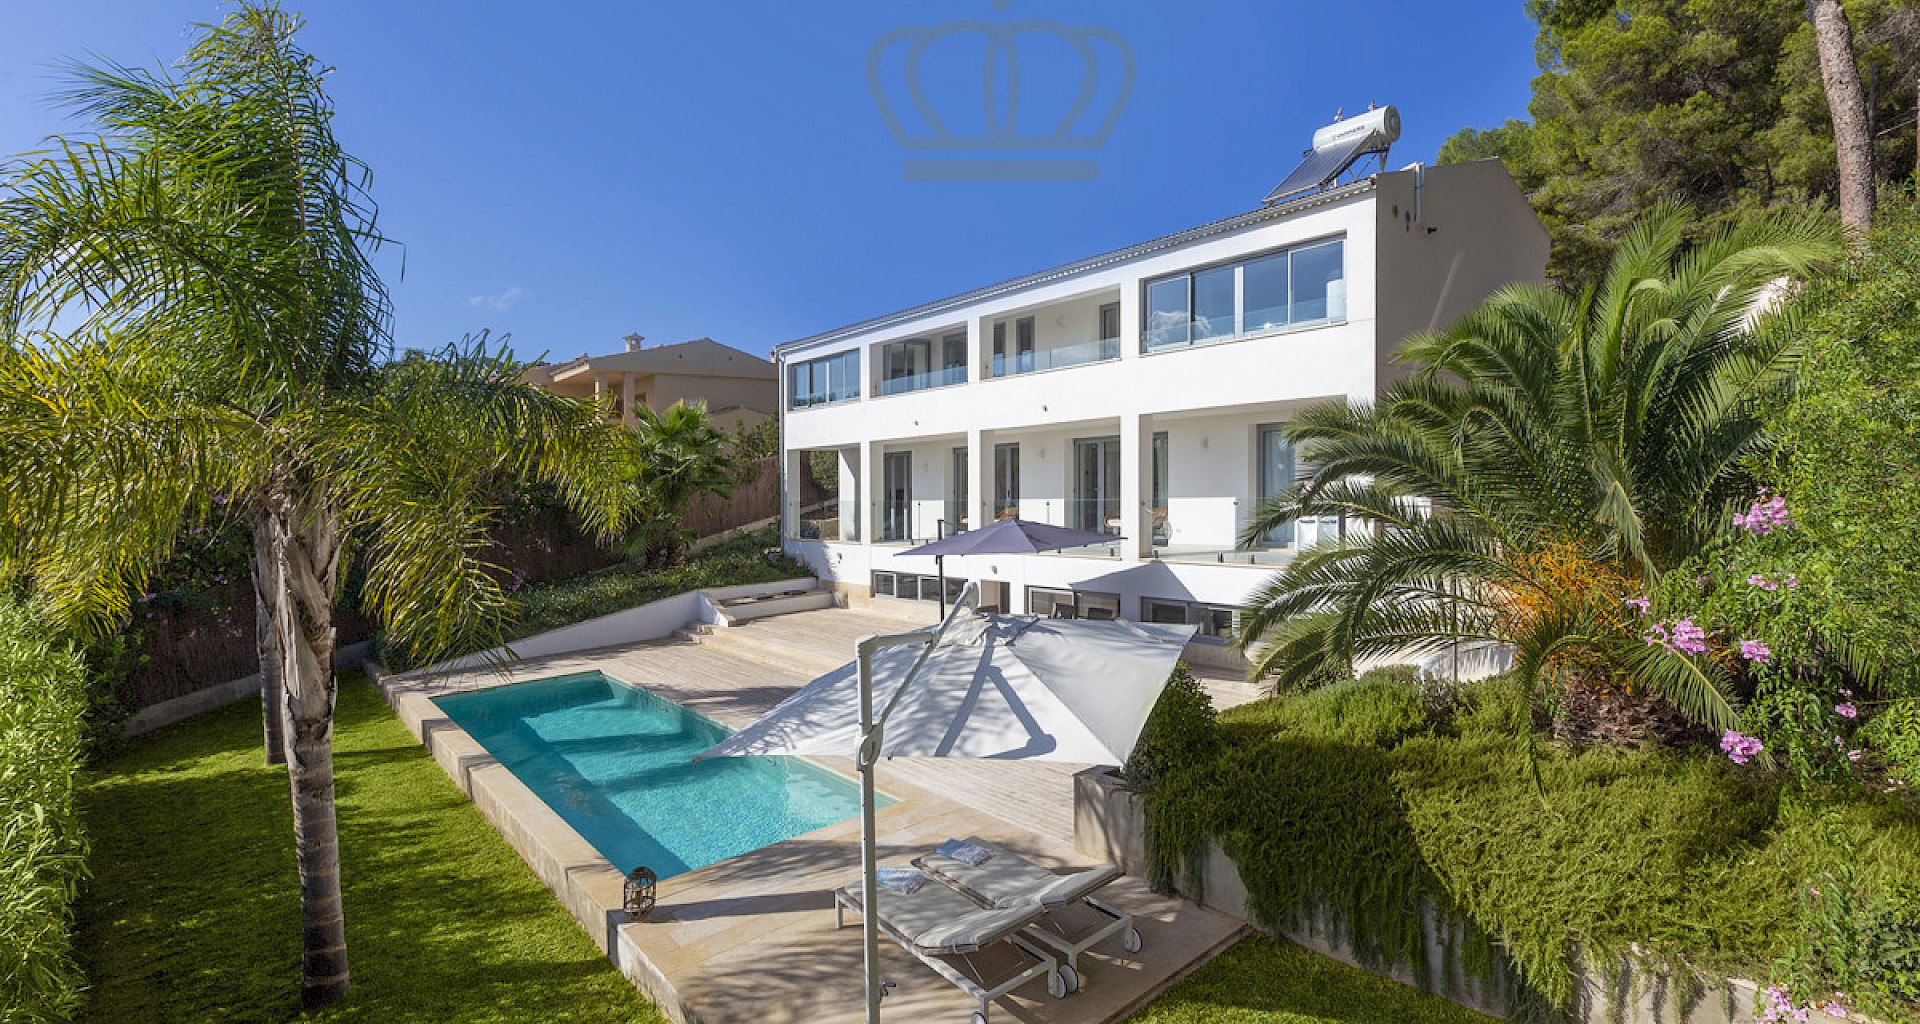 KROHN & LUEDEMANN Modern family villa in Costa den Blanes with sea views 